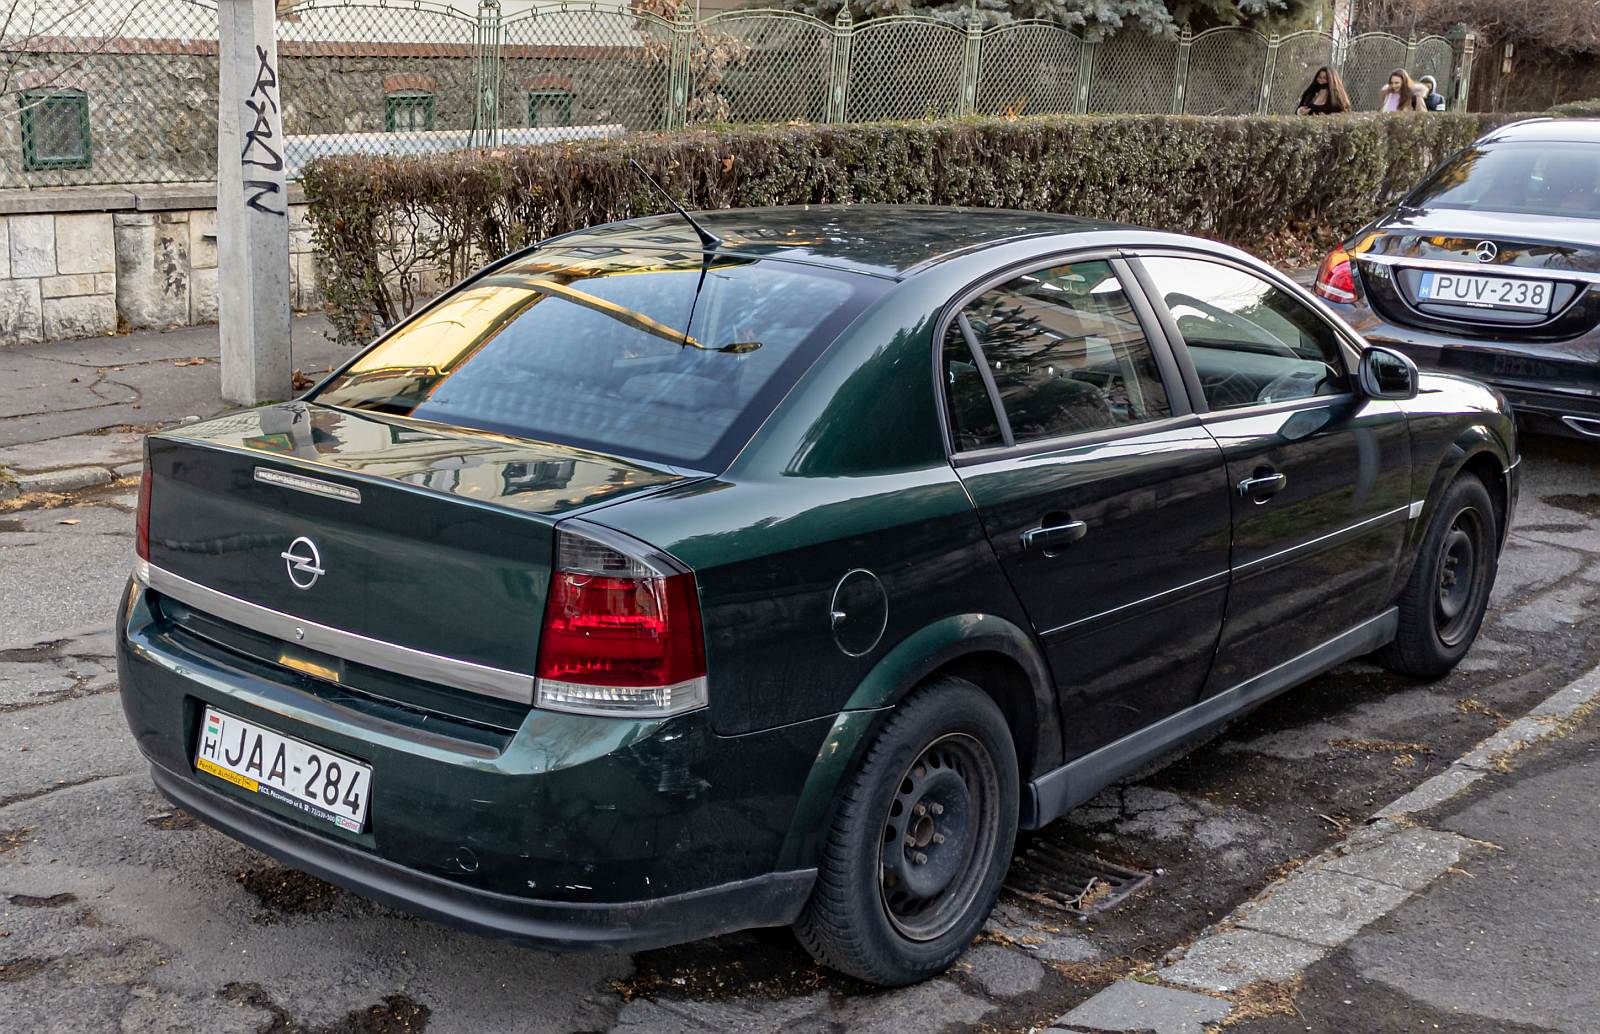 Rückansicht: Opel Vectra C in der Farbe Digitalgrün (bin nicht 100% sicher). Foto: Februar, 2022.